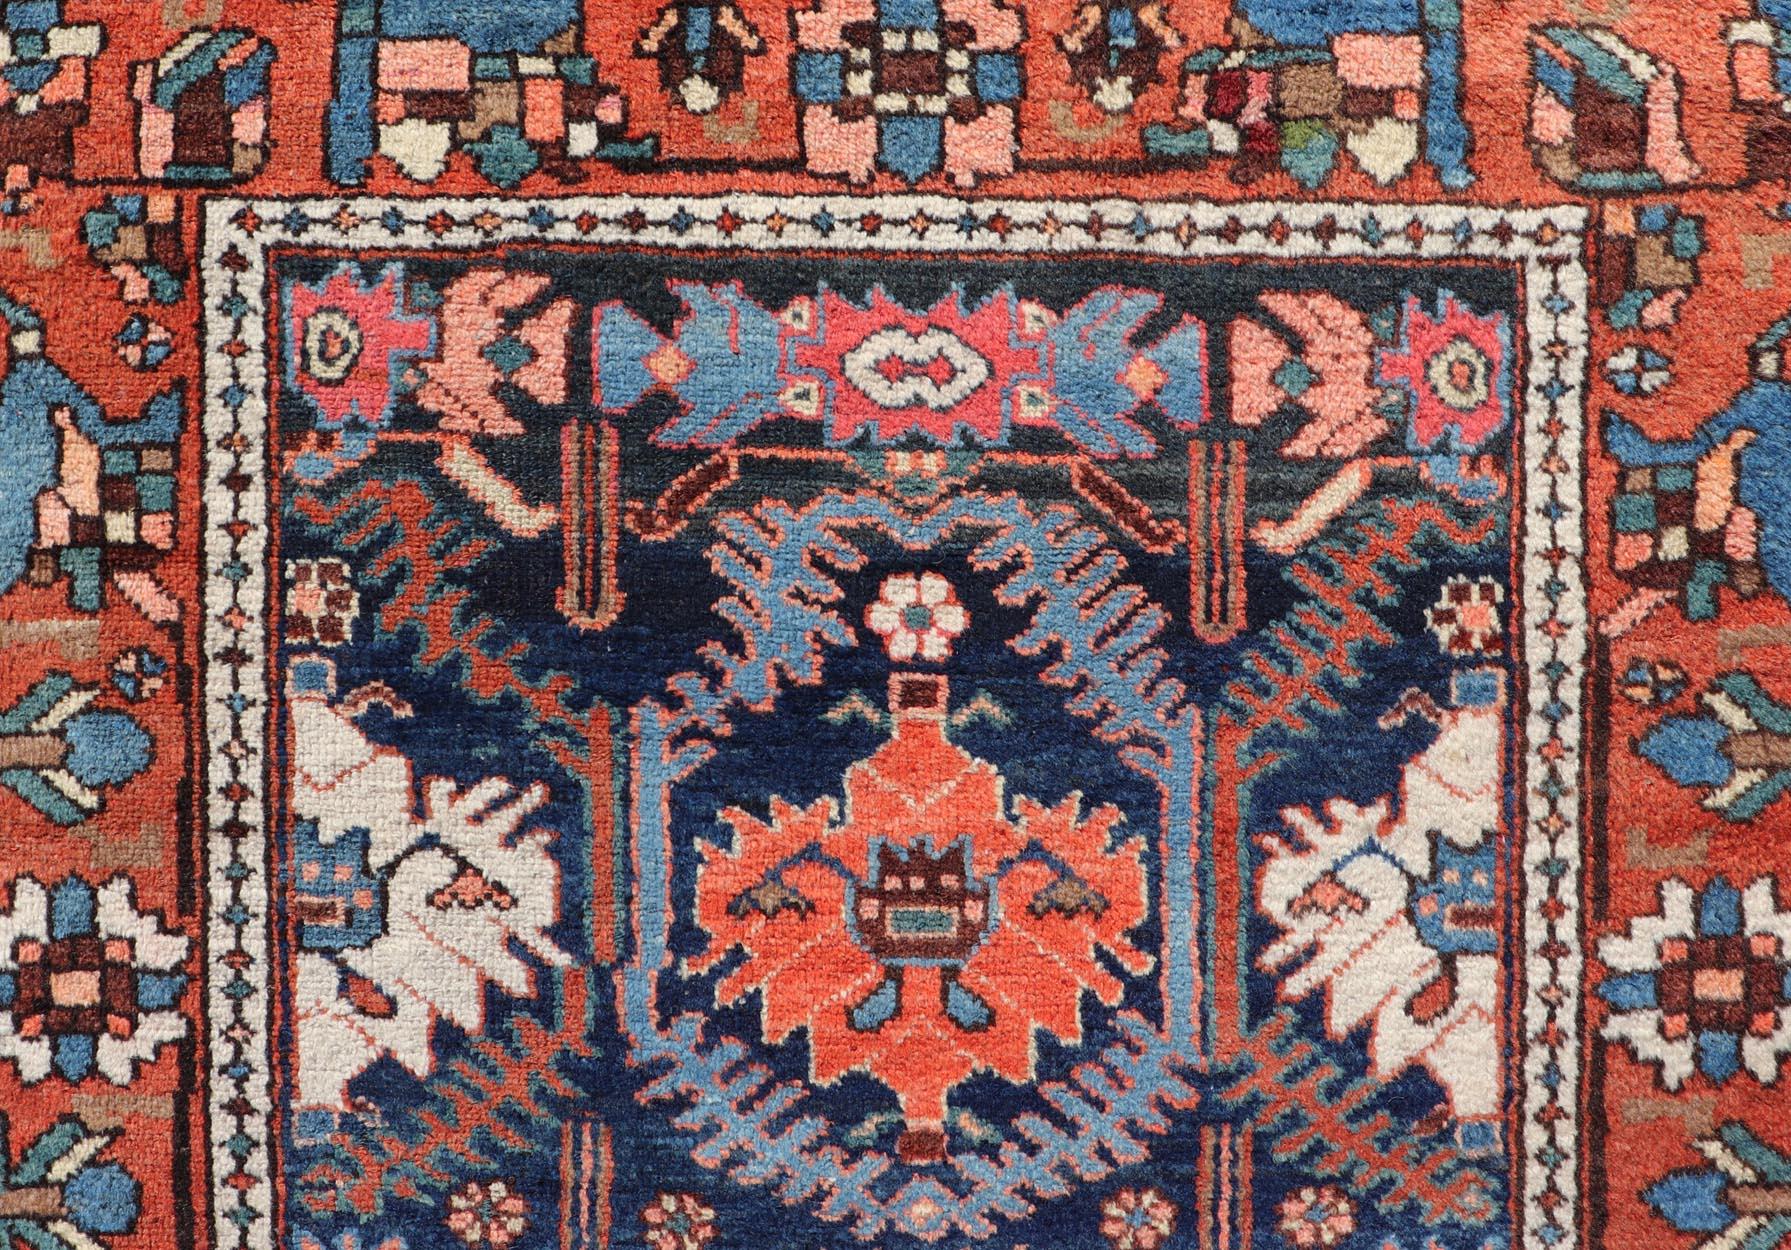 Tapis de galerie Bakhtiari persan ancien et coloré avec un design tribal sur toute la surface. Keivan Woven Arts / tapis EMB-222191-15451, pays d'origine / type : Iran / CIRCA, vers 1920
Mesures : 3'8 x 12'9 
Ce magnifique tapis ancien Bakhtiari